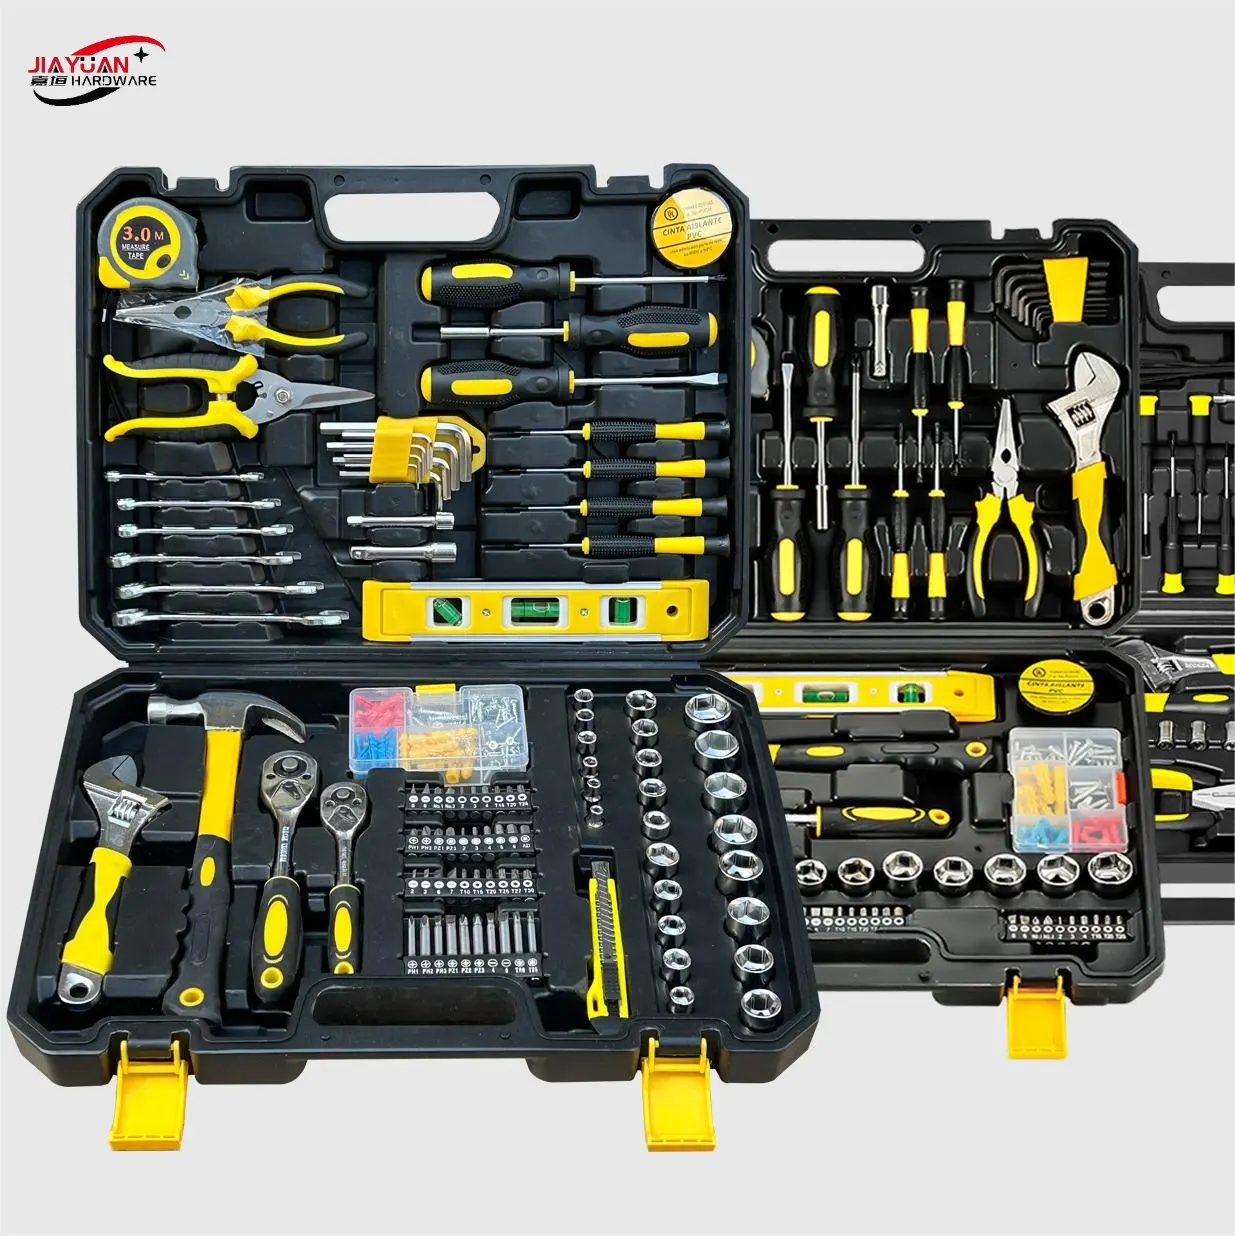 Kit de herramientas manuales de caja de herramientas de reparación profesional de 108 piezas Artículo No. Juego de herramientas combinadas